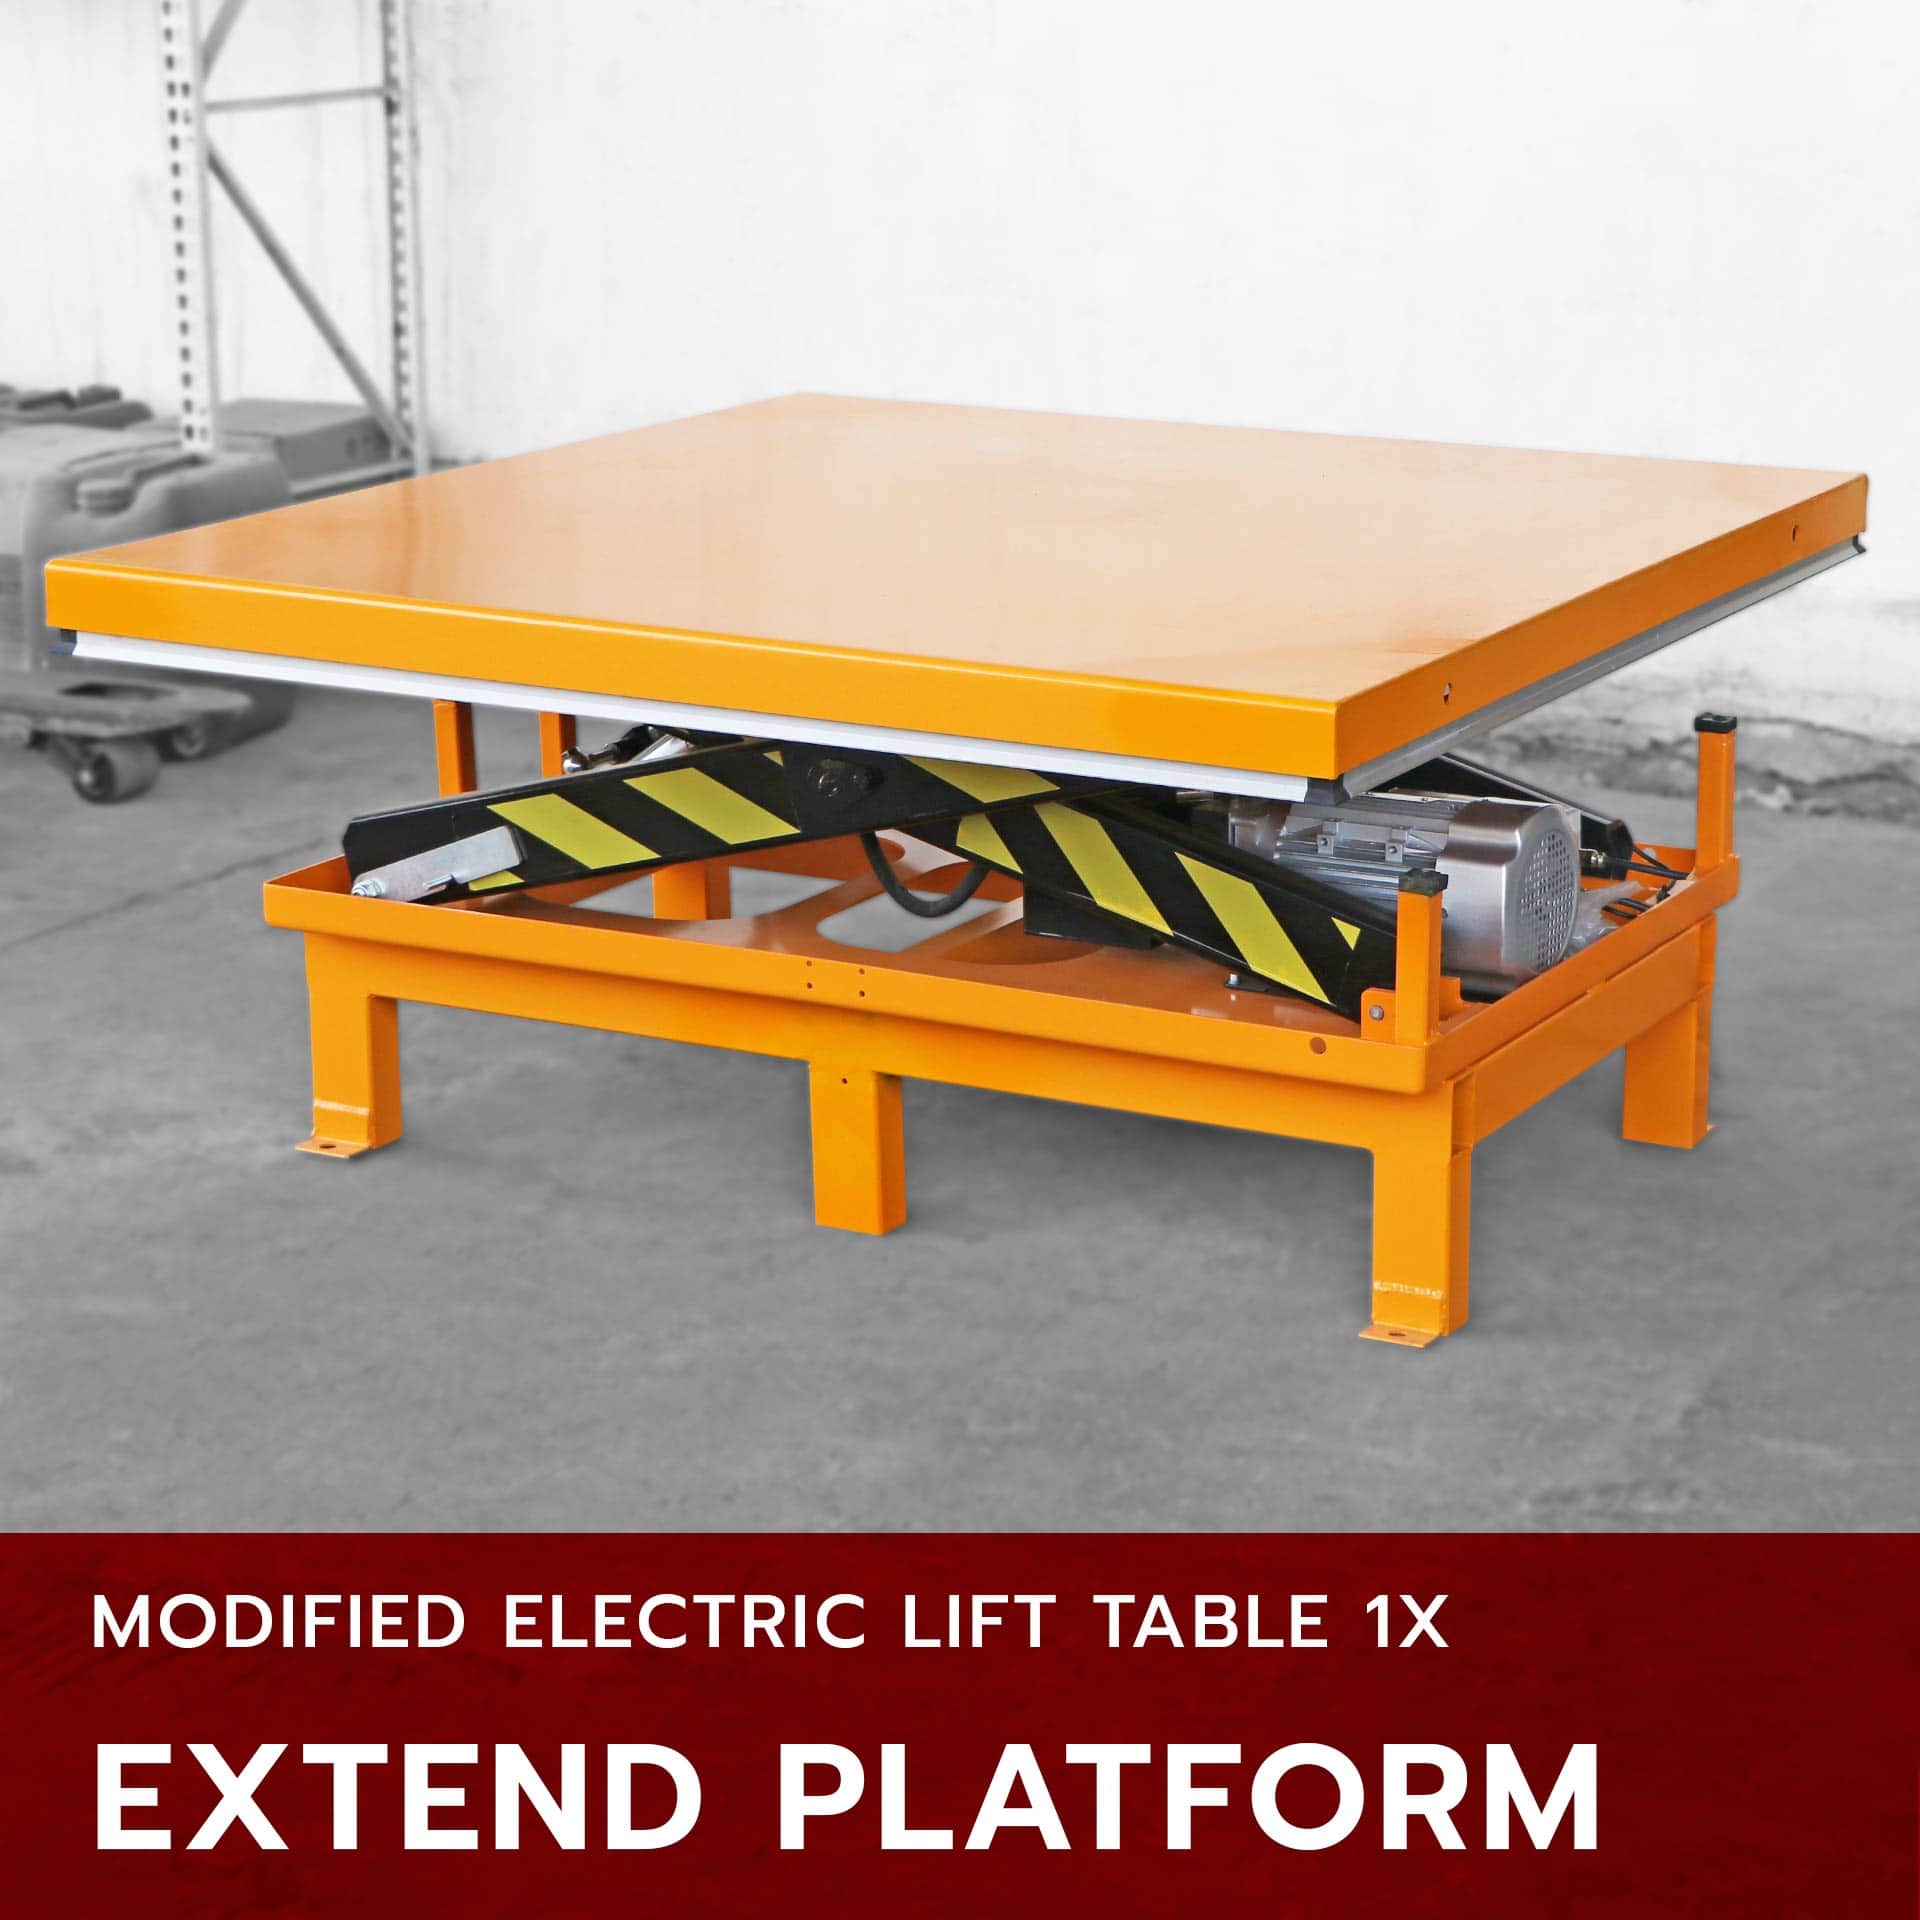 ขยายแพลตฟอร์ม [modified] x-lift table 1x i ต่อขาเพิ่ม ผลิตหน้าโต๊ะใหม่